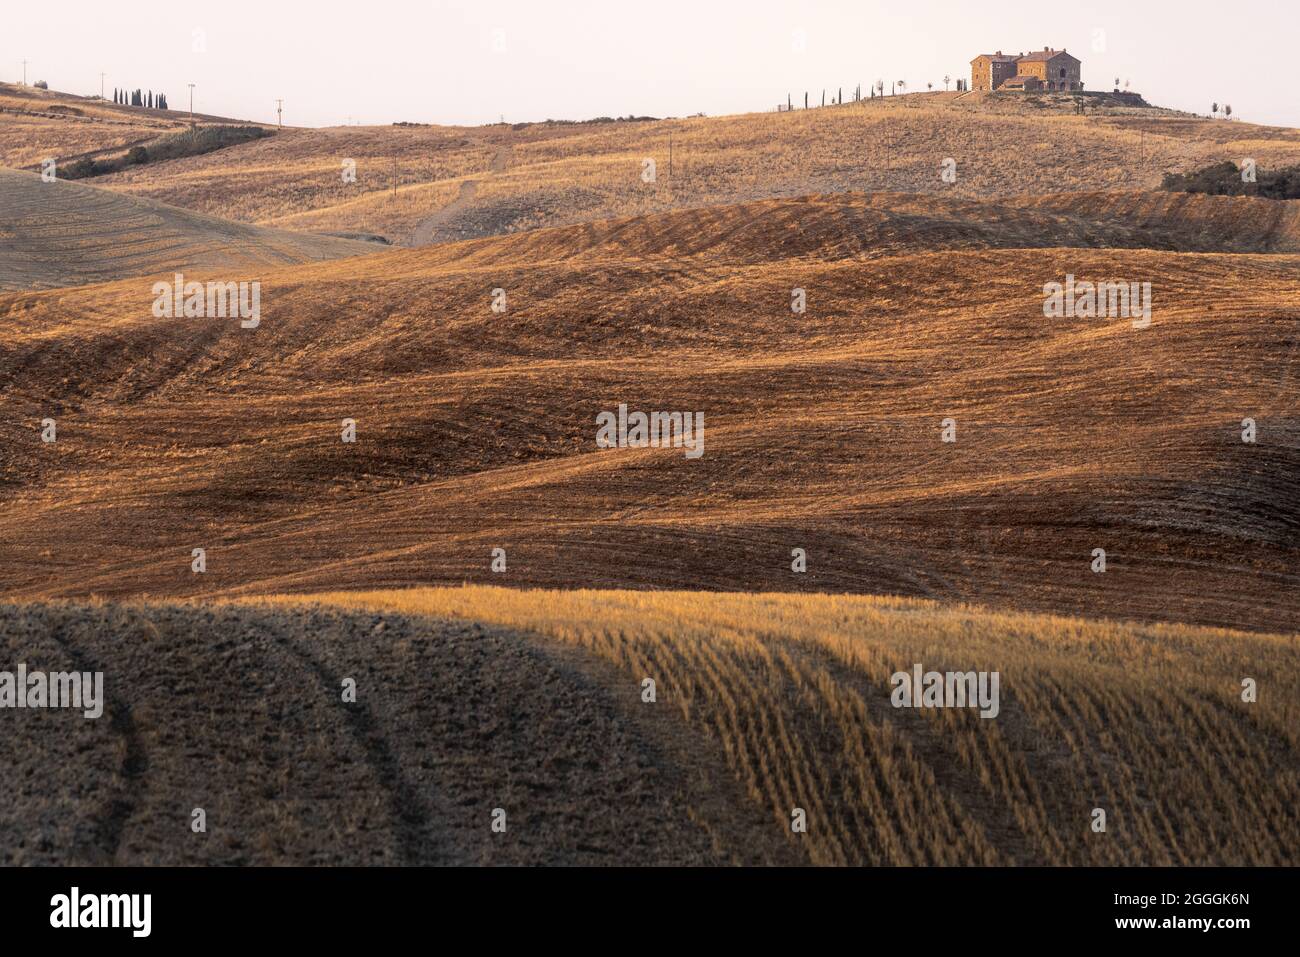 Ikonische, ländliche tukkanische Sommerlandschaft mit Hügeln, die mit trocken geernteten Feldern bedeckt sind, und einem entfernten Landhaus Stockfoto